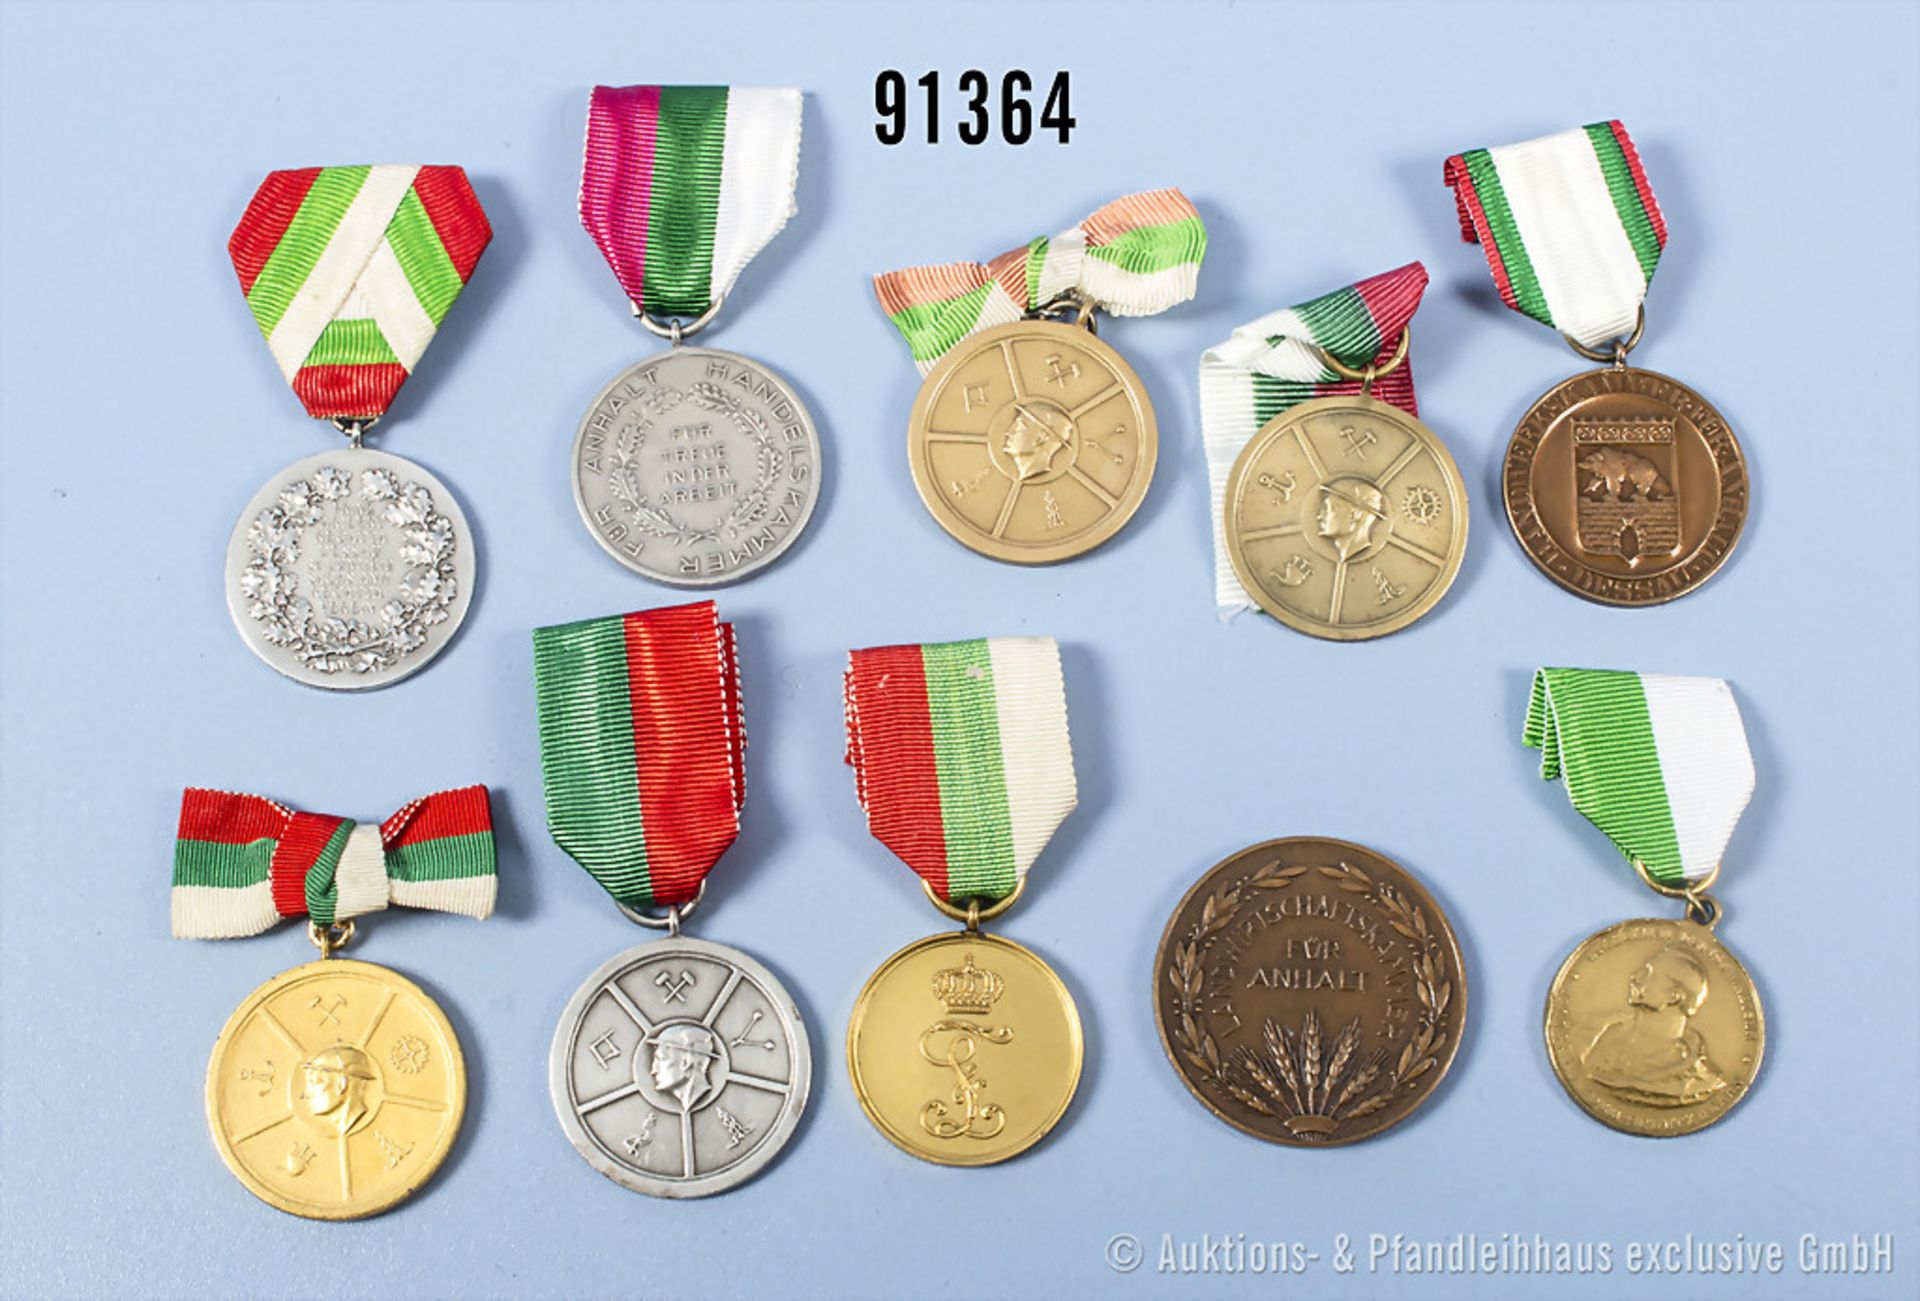 Konv. Anhalt 10 überwiegend tragbare Medaillen u.a. Bronzene, Silberne und Goldene ...